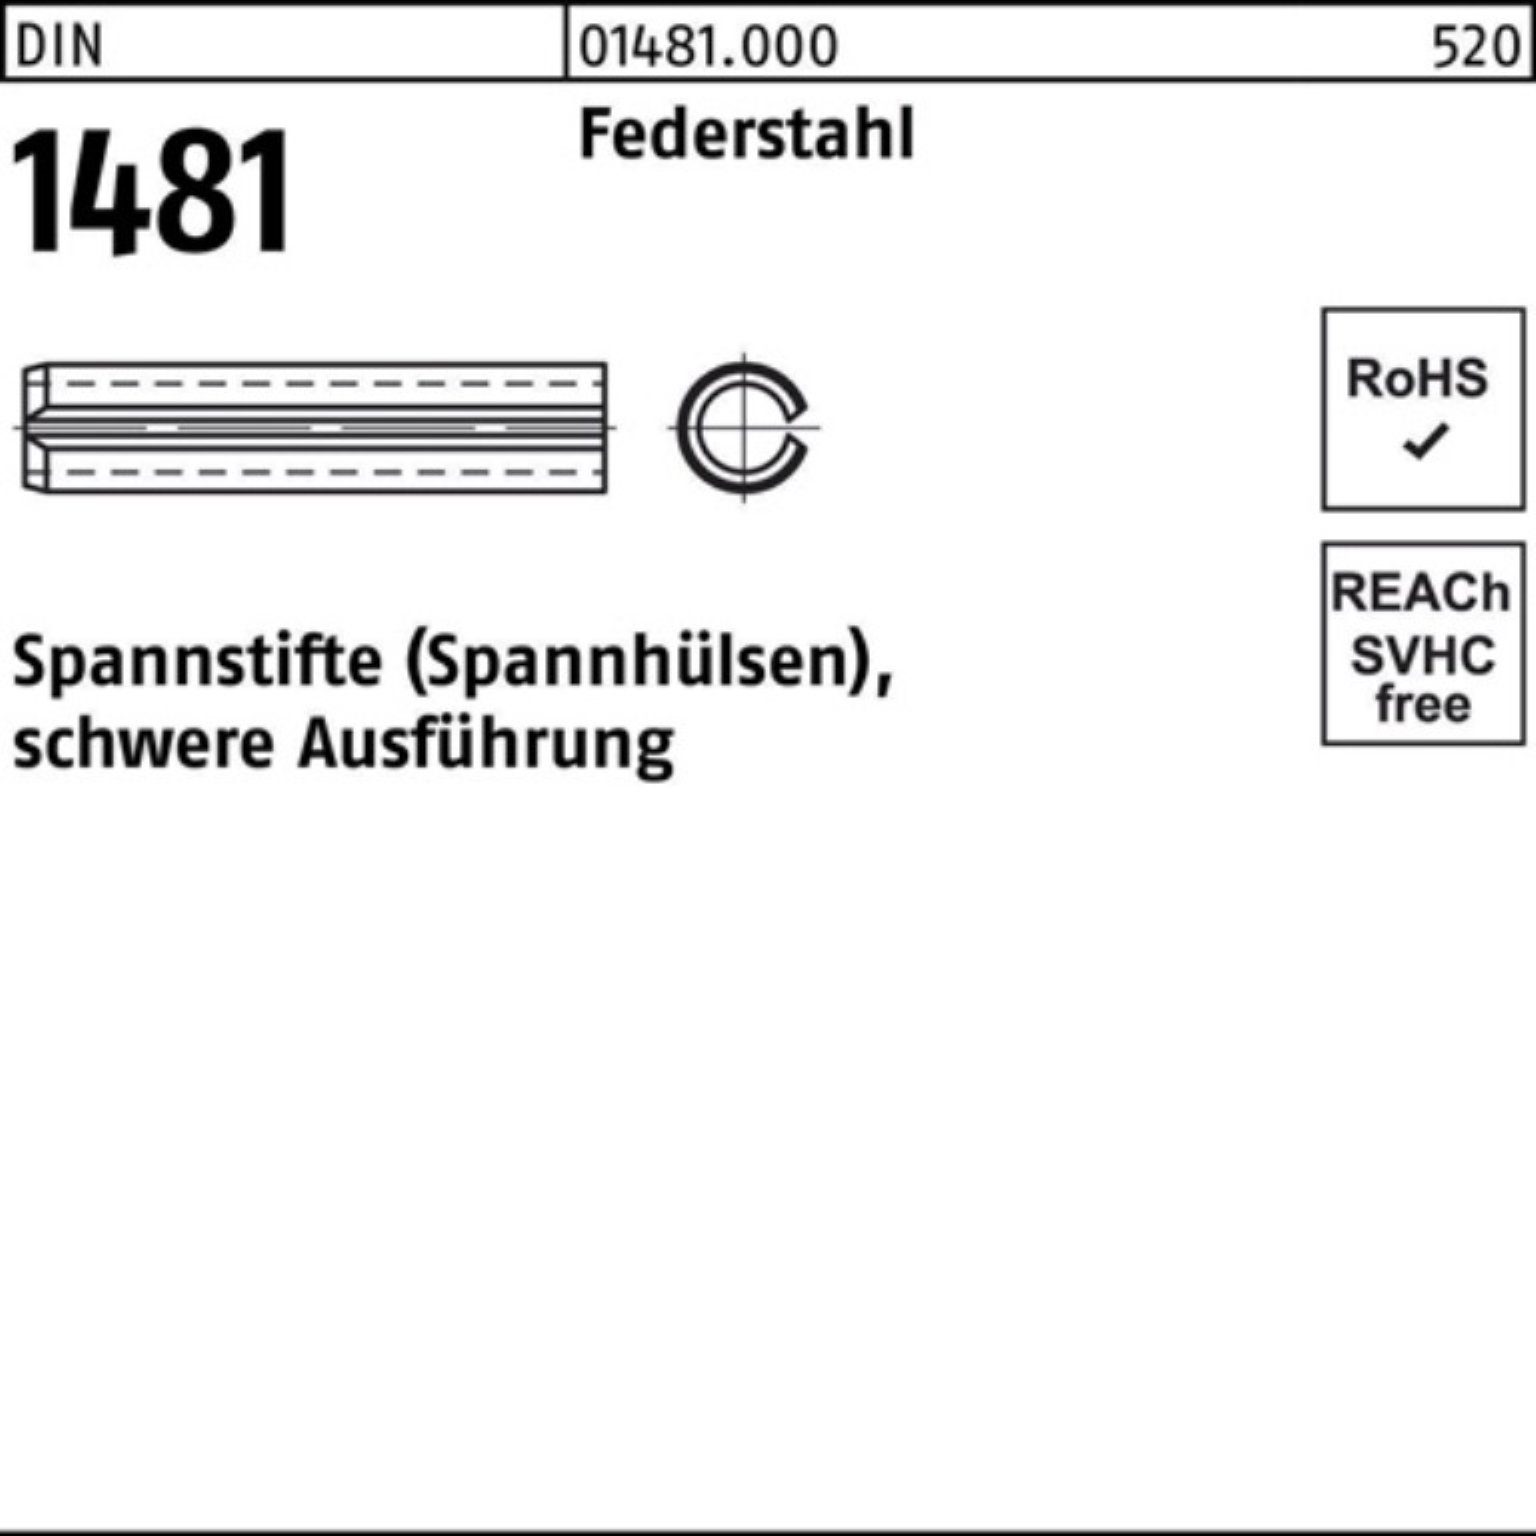 Reyher Spannstift 100er Pack Spannstift DIN 1481 21x 100 Federstahl schwere Ausführung